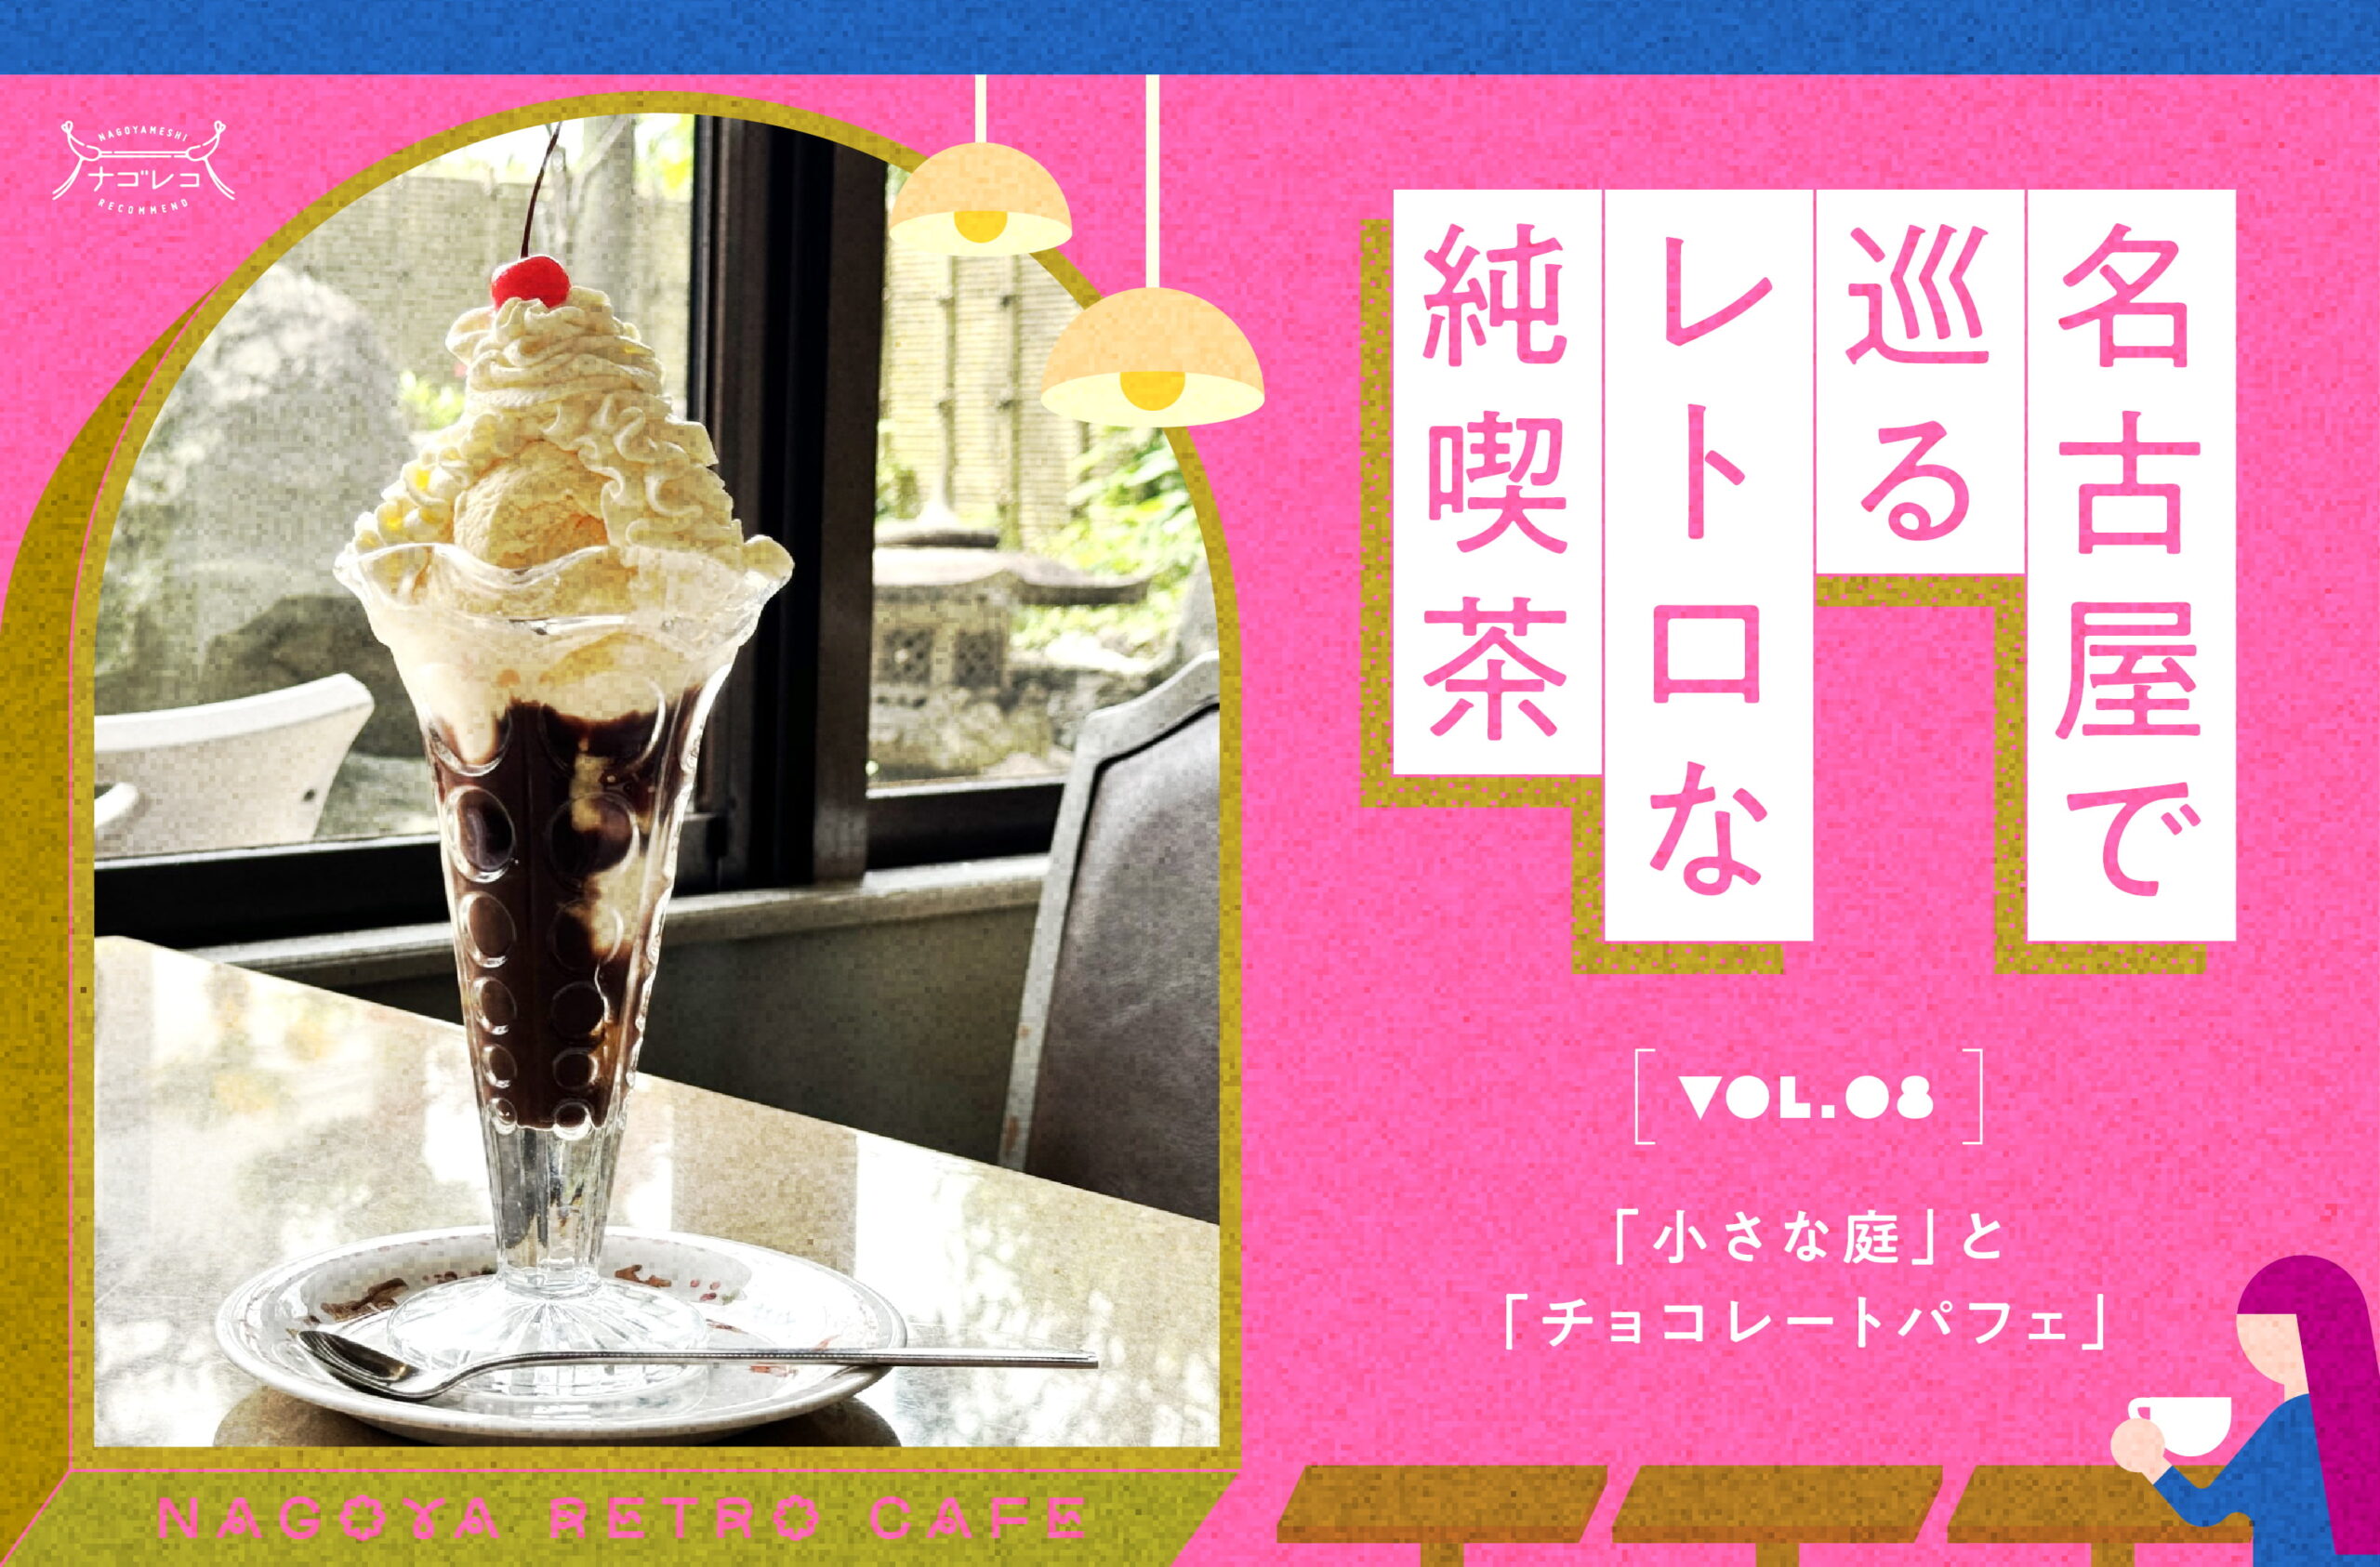 名古屋で巡るレトロな純喫茶 Vol.8「小さな庭」と「チョコレートパフェ」